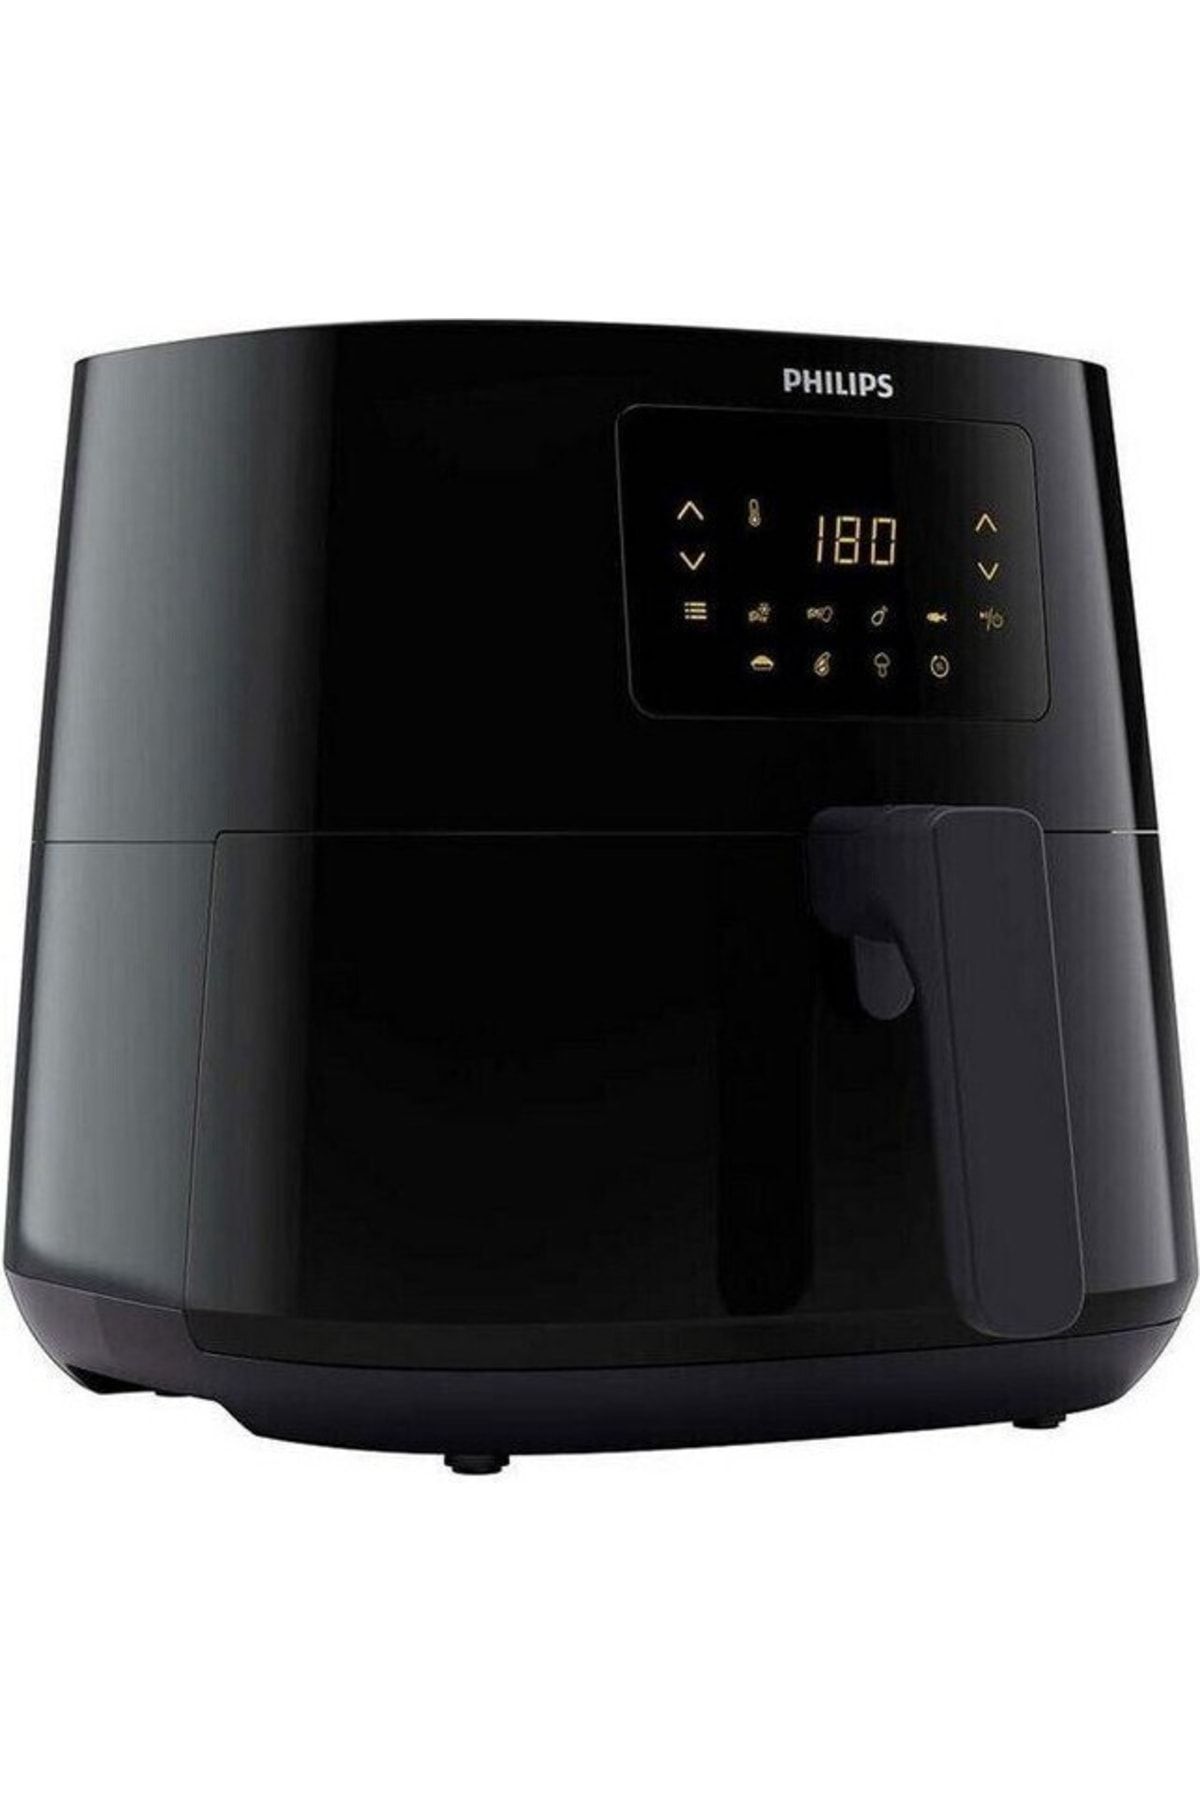 Philips Airfryer XL HD9270/96